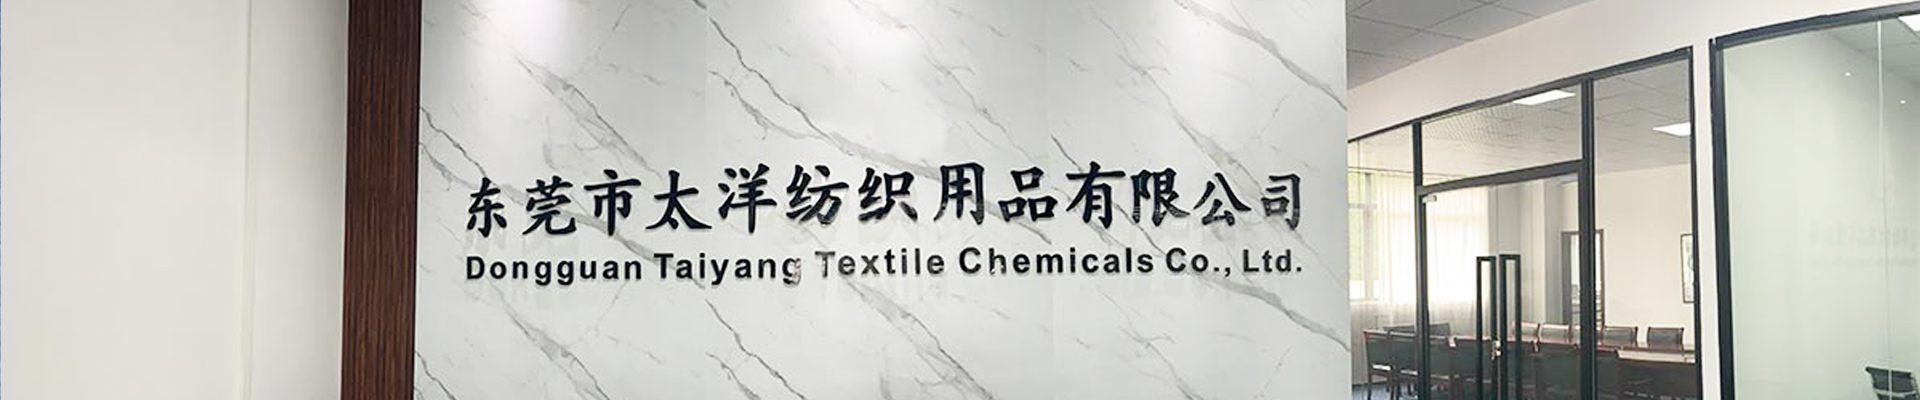 Dongguan Taiyang Textile Chemicals Co., Ltd.